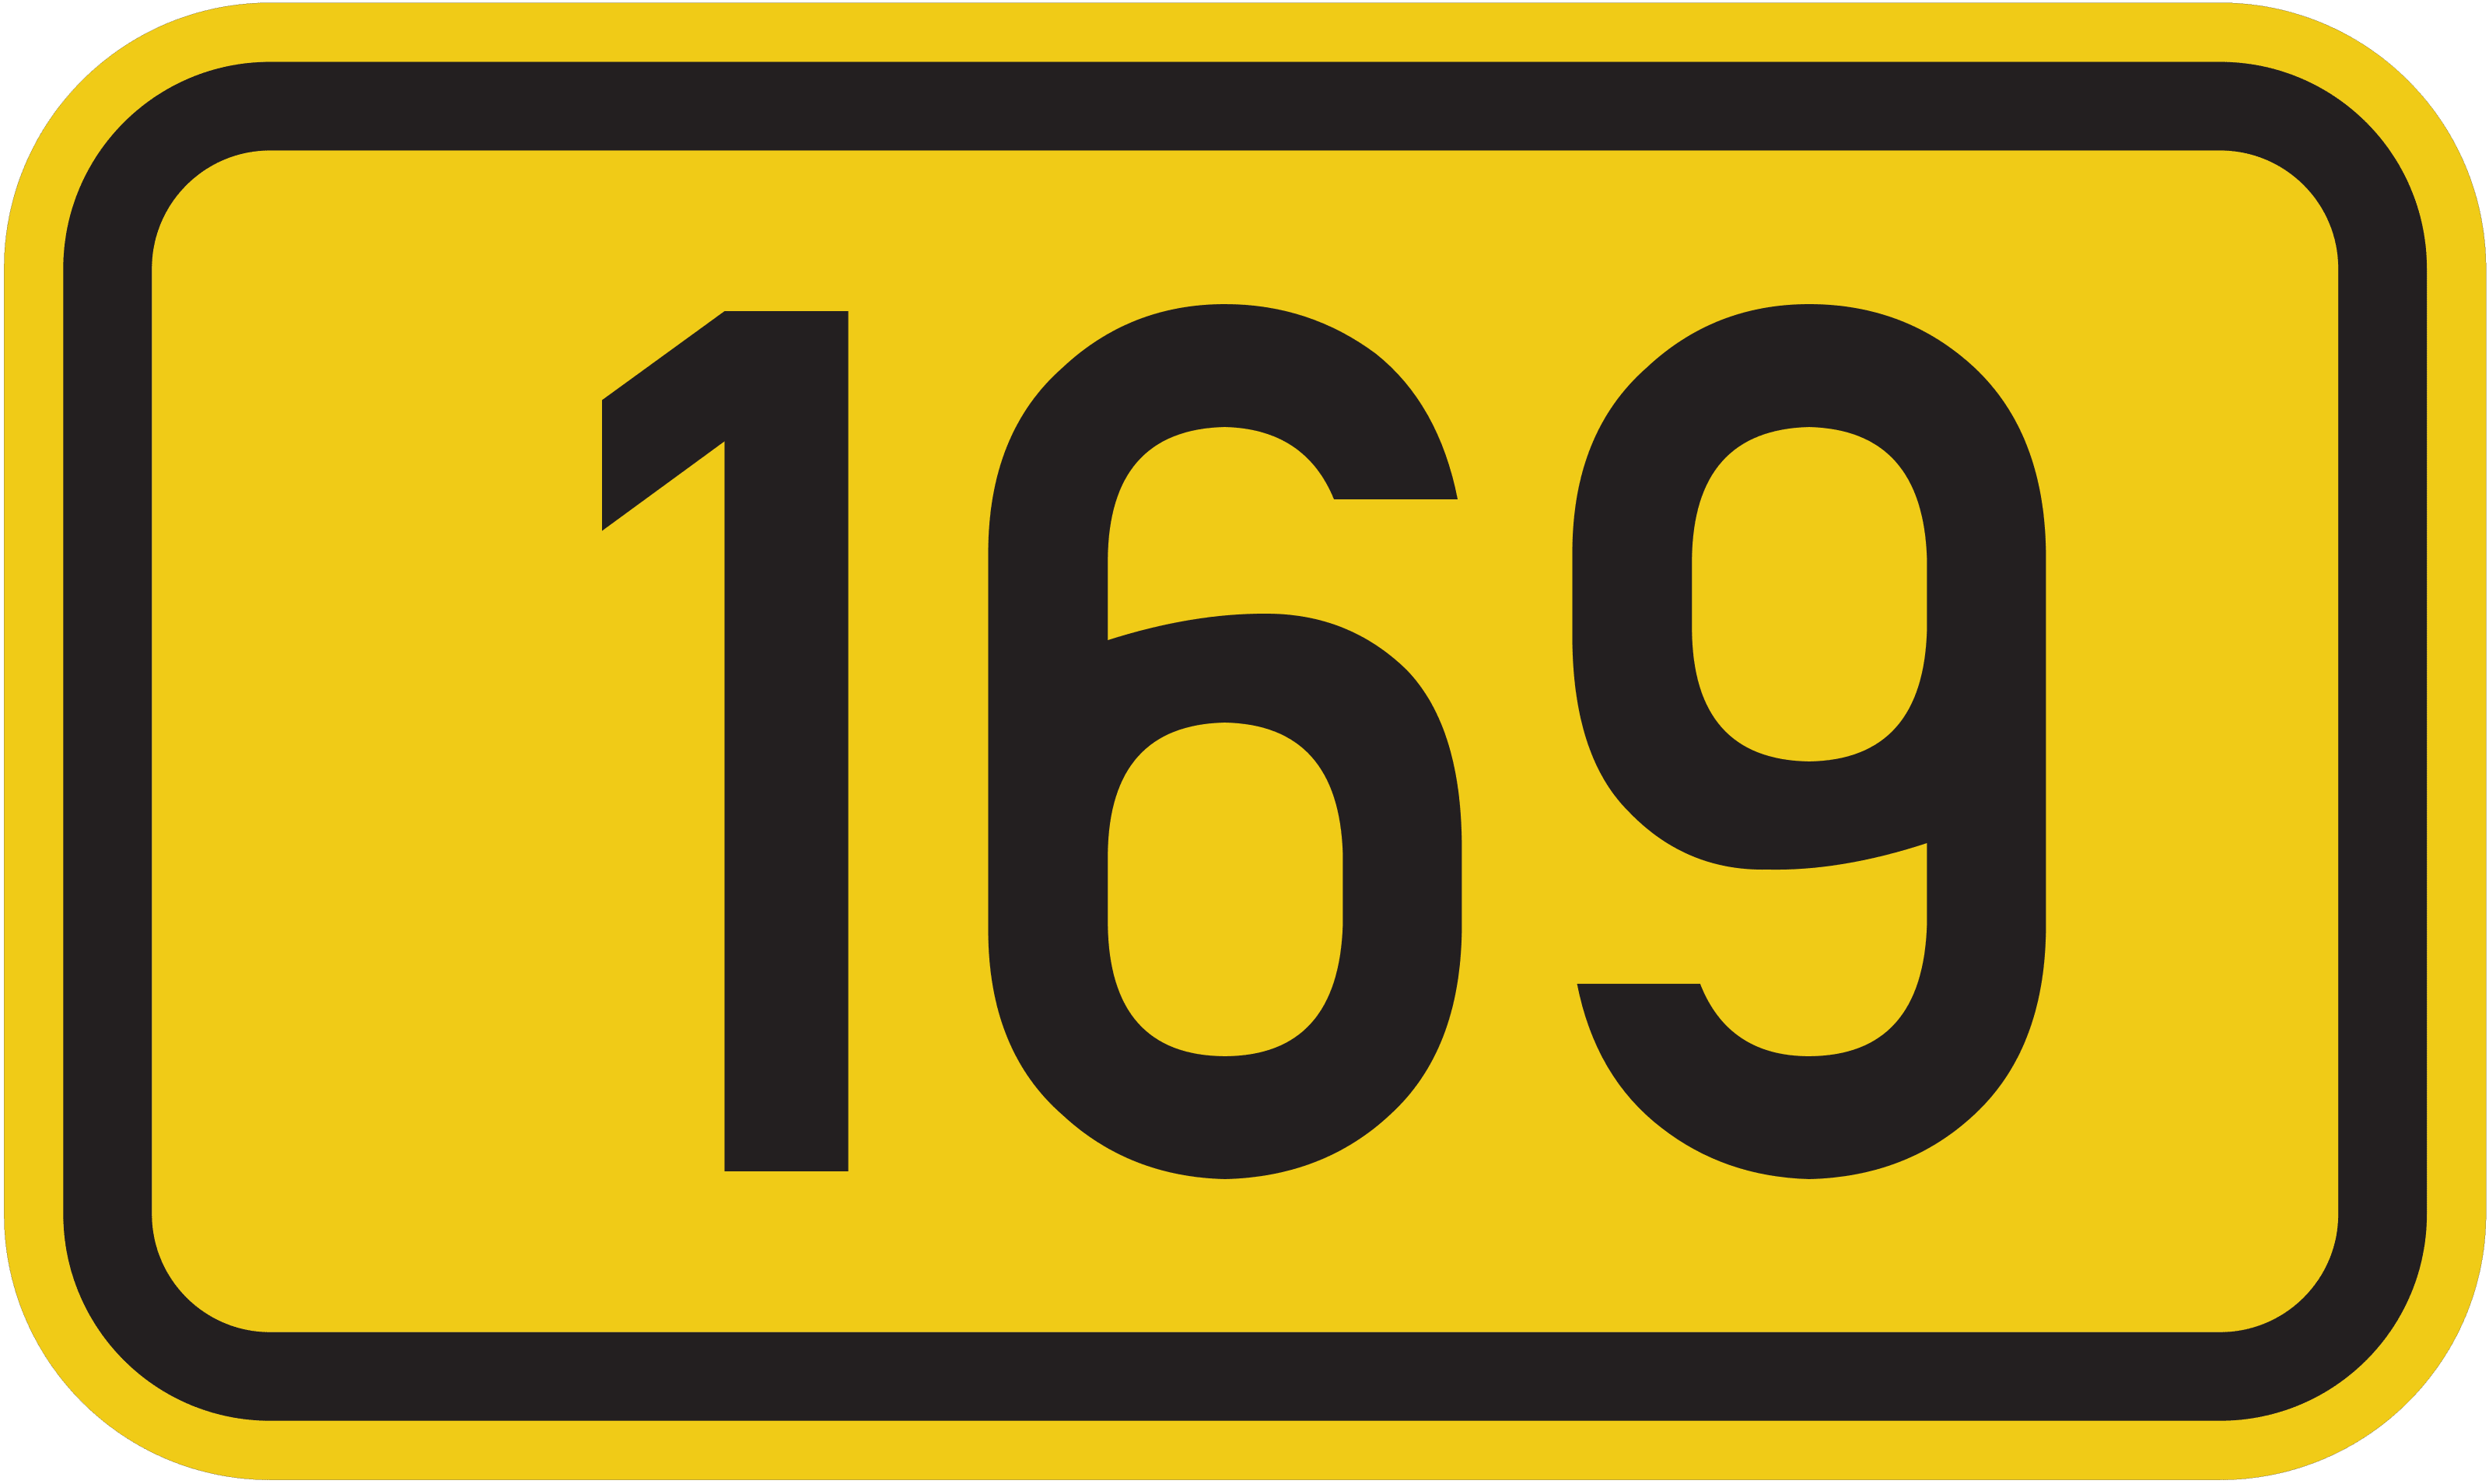 Bundesstraße B 169